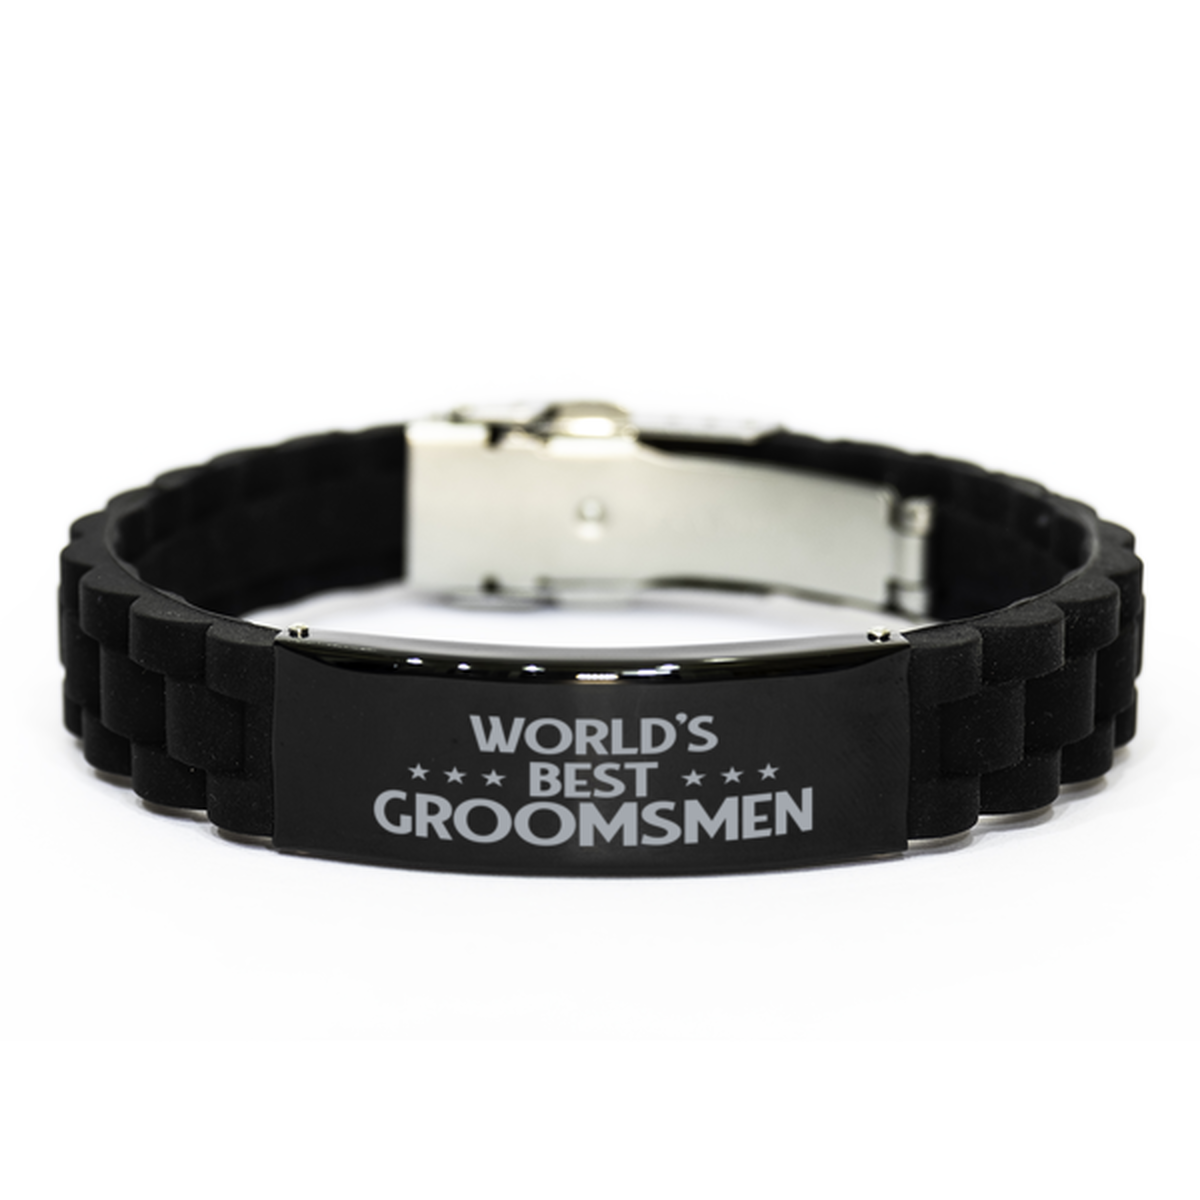 World's Best Groomsmen Gifts, Funny Black Engraved Bracelet For Groomsmen, Family Gifts For Men